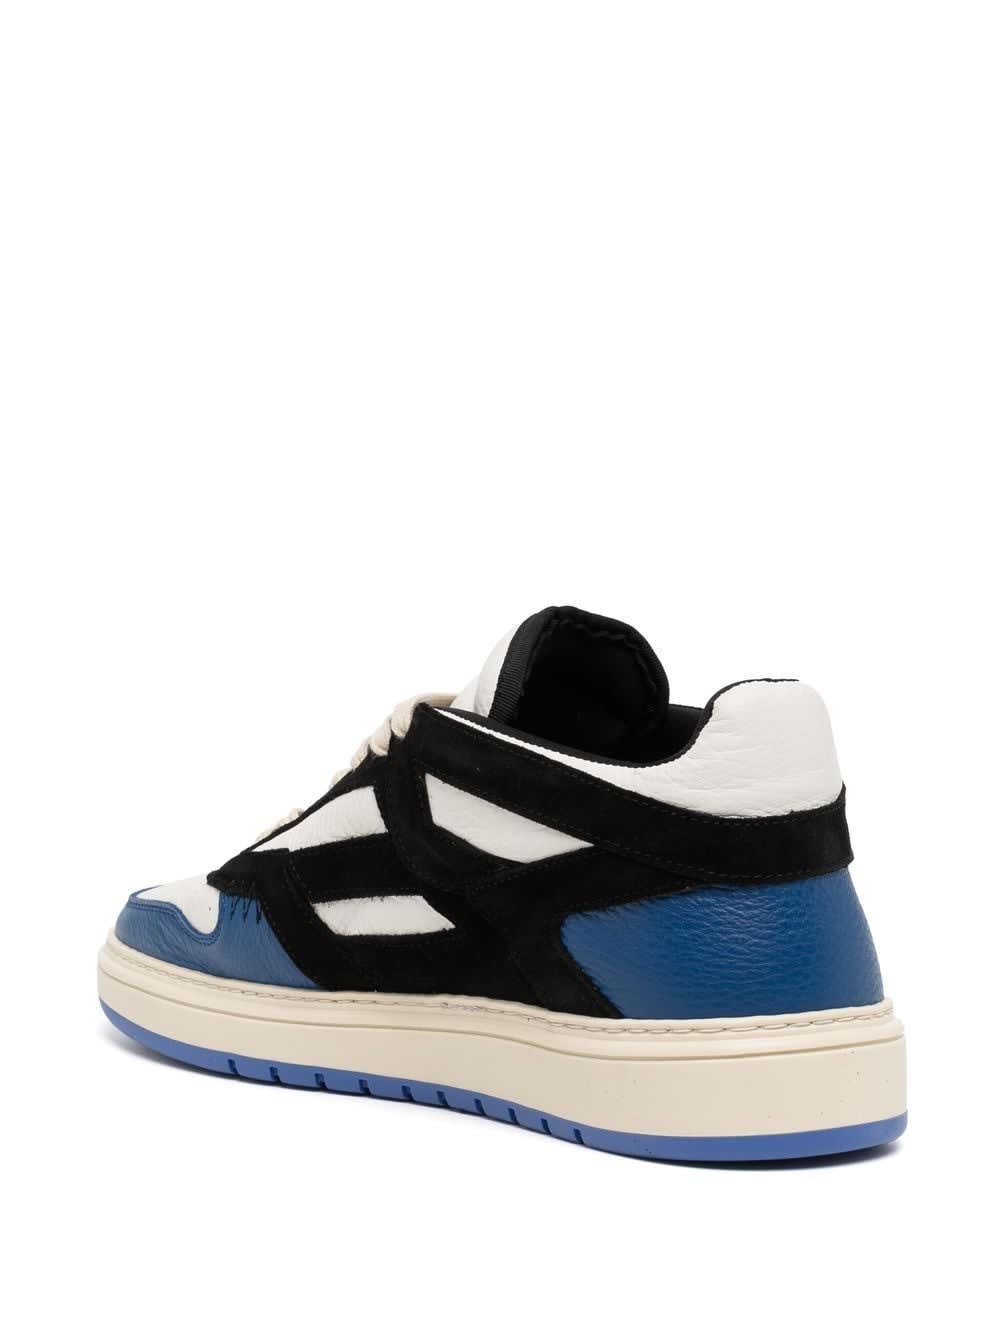 Shop Represent Reptor Low Sneakers In Black Cobalt Blue